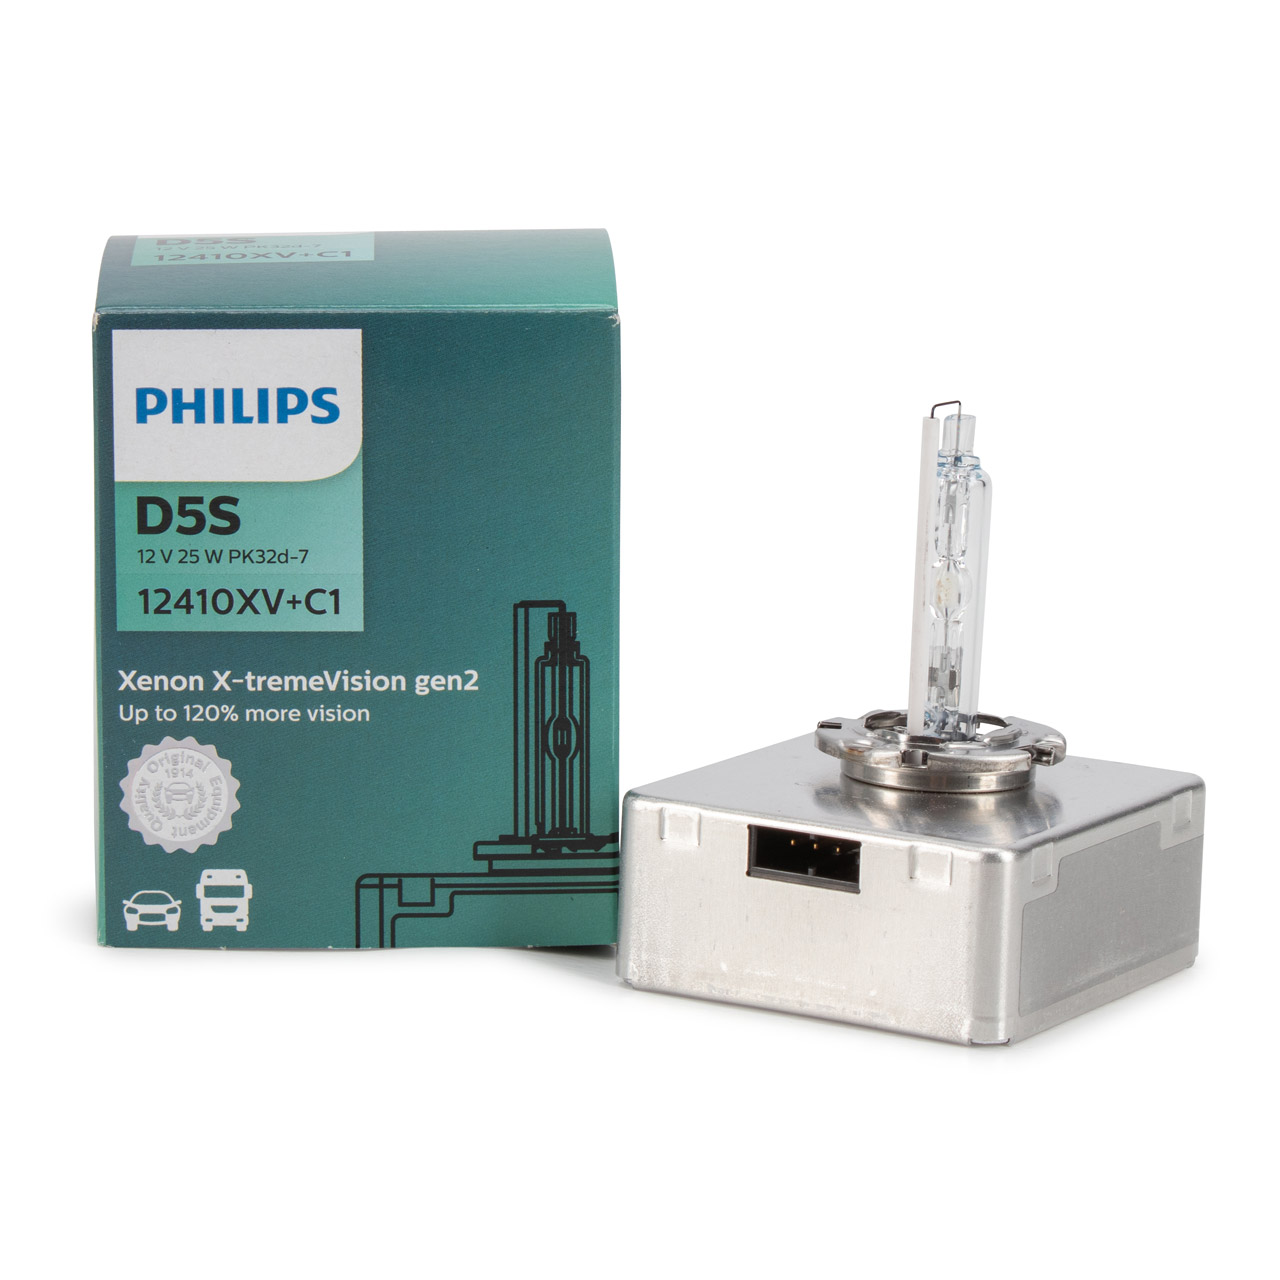 PHILIPS 12410XV+C1 Xenon X-tremeVision Brenner Lampe Glühlampe DS5 12V 25W  PK32d-7 gen2 